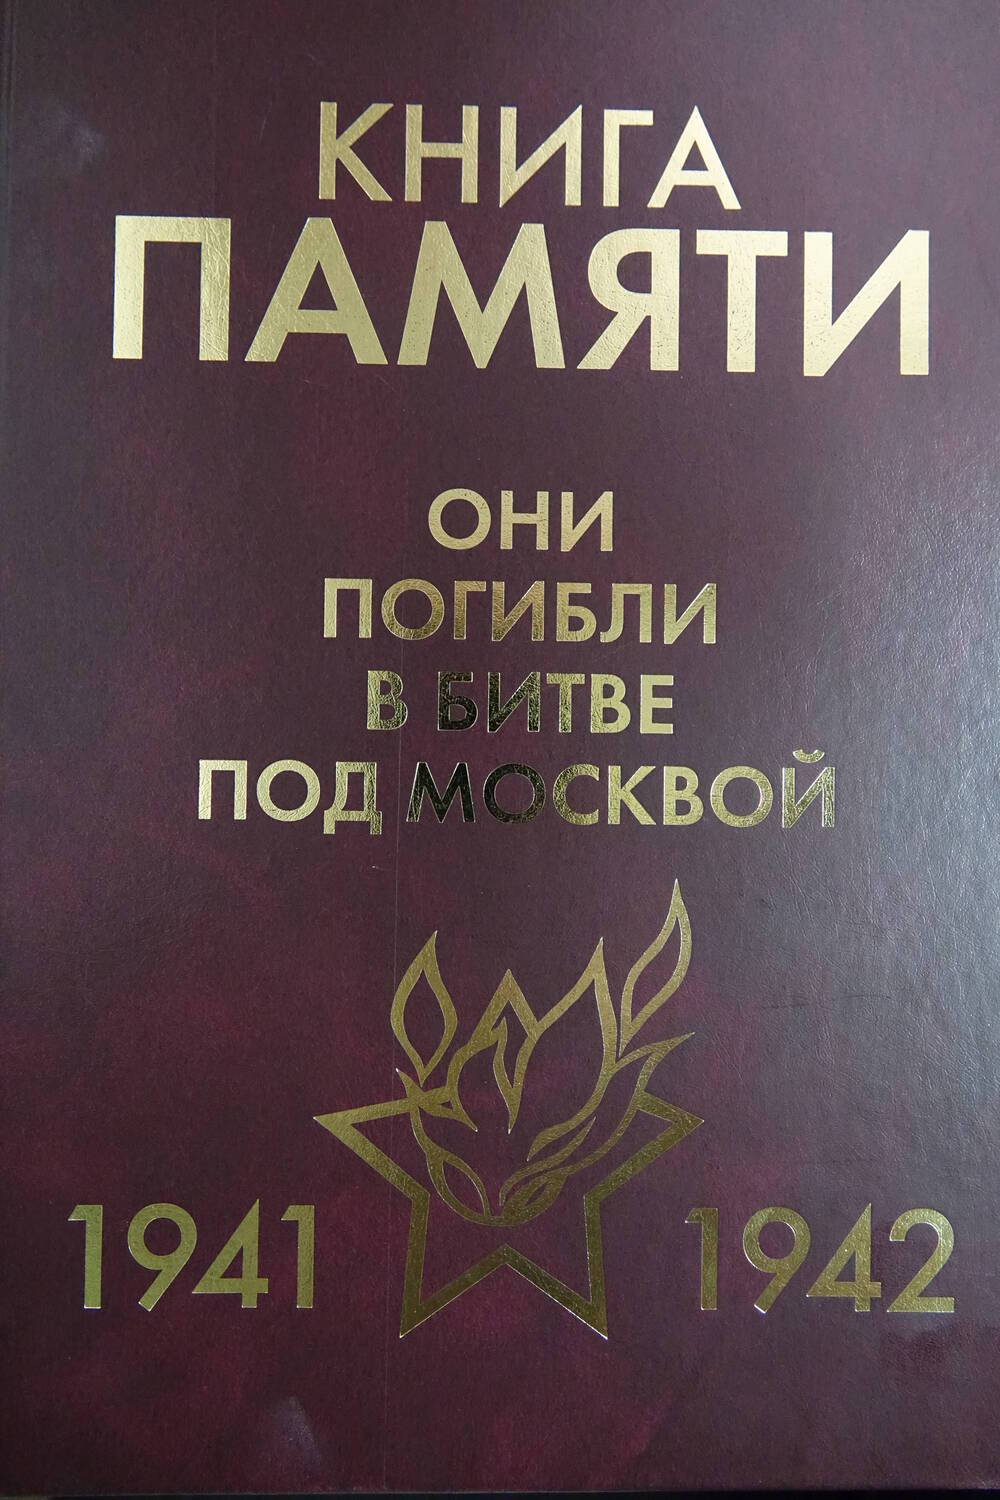 Книга Памяти «Они погибли в битве под Москвой   1941-1942гг.» Том 8 «Л»